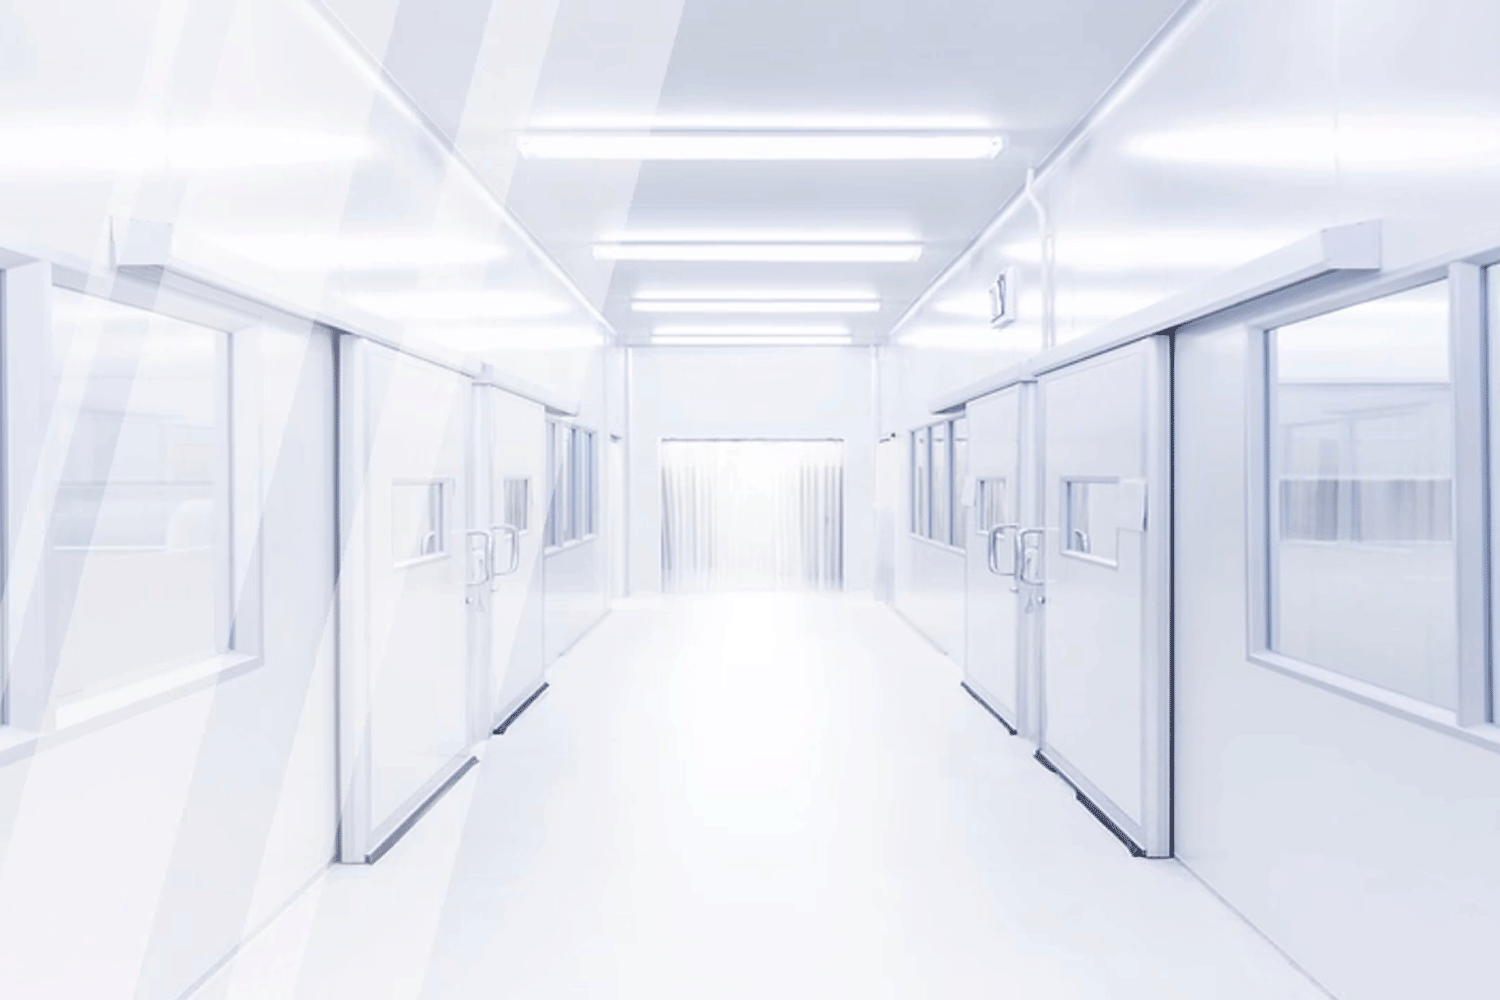 Anime Landscape Spaceship hallway background